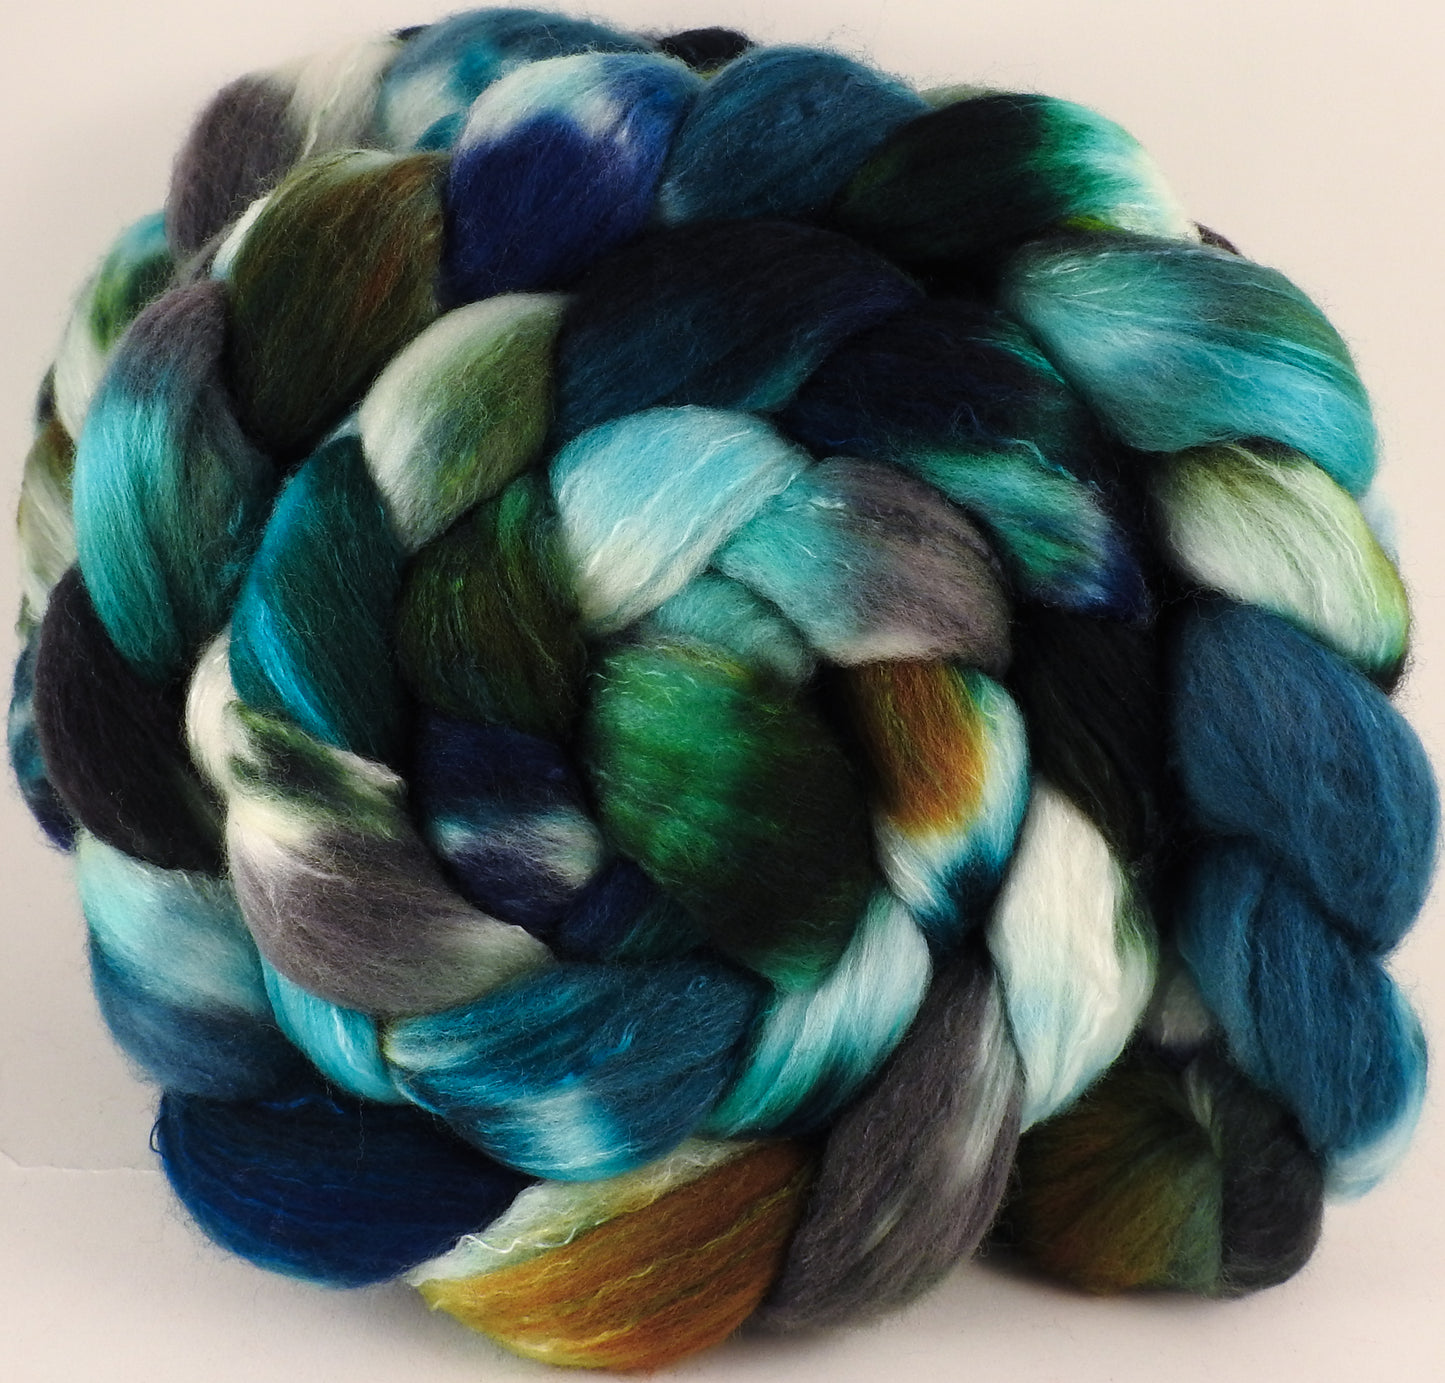 Hand dyed top for spinning - Kraken - Organic Polwarth / Tussah silk (80/20) - Inglenook Fibers